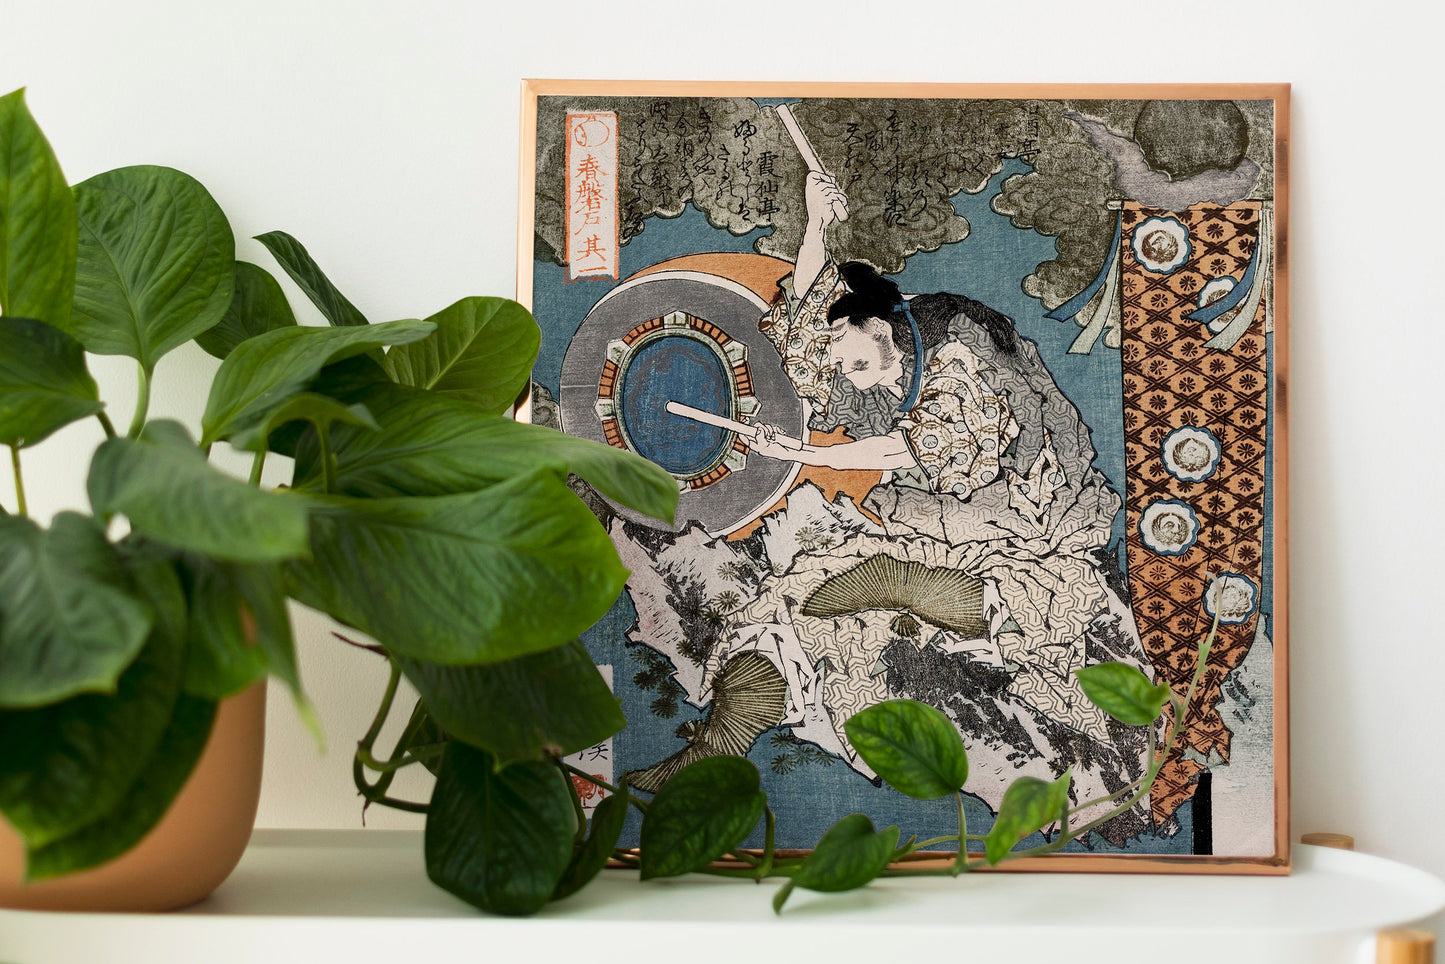 Totoya Hokkei Ukiyo-e Woodblock Prints [7 Images]